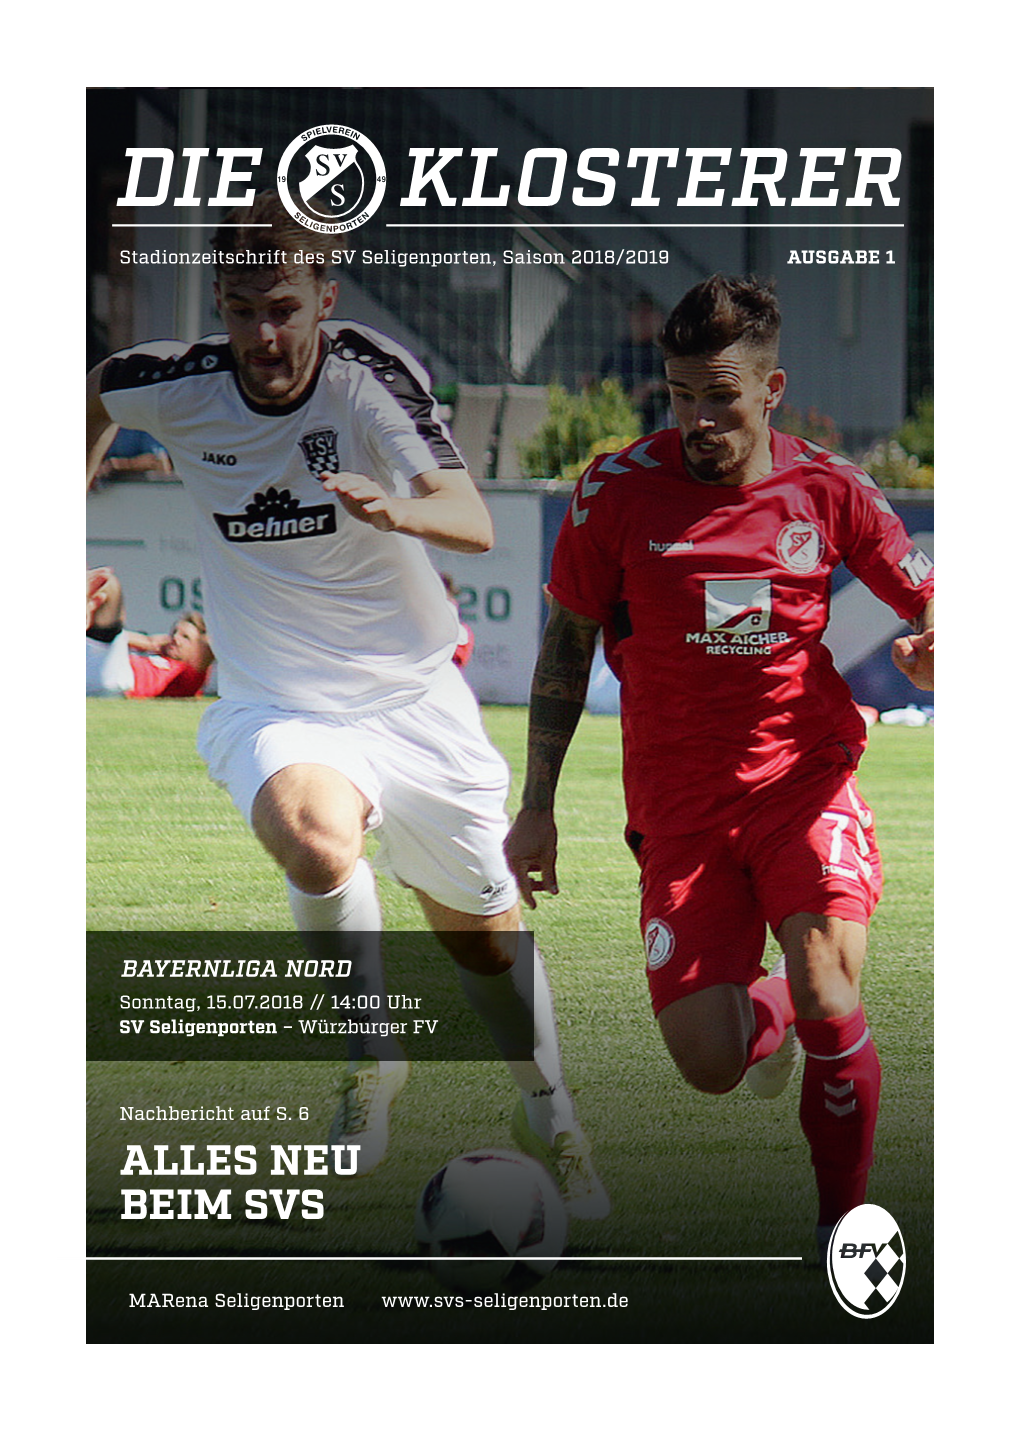 DIE KLOSTERER Stadionzeitschrift Des SV Seligenporten, Saison 2018/2019 AUSGABE 1